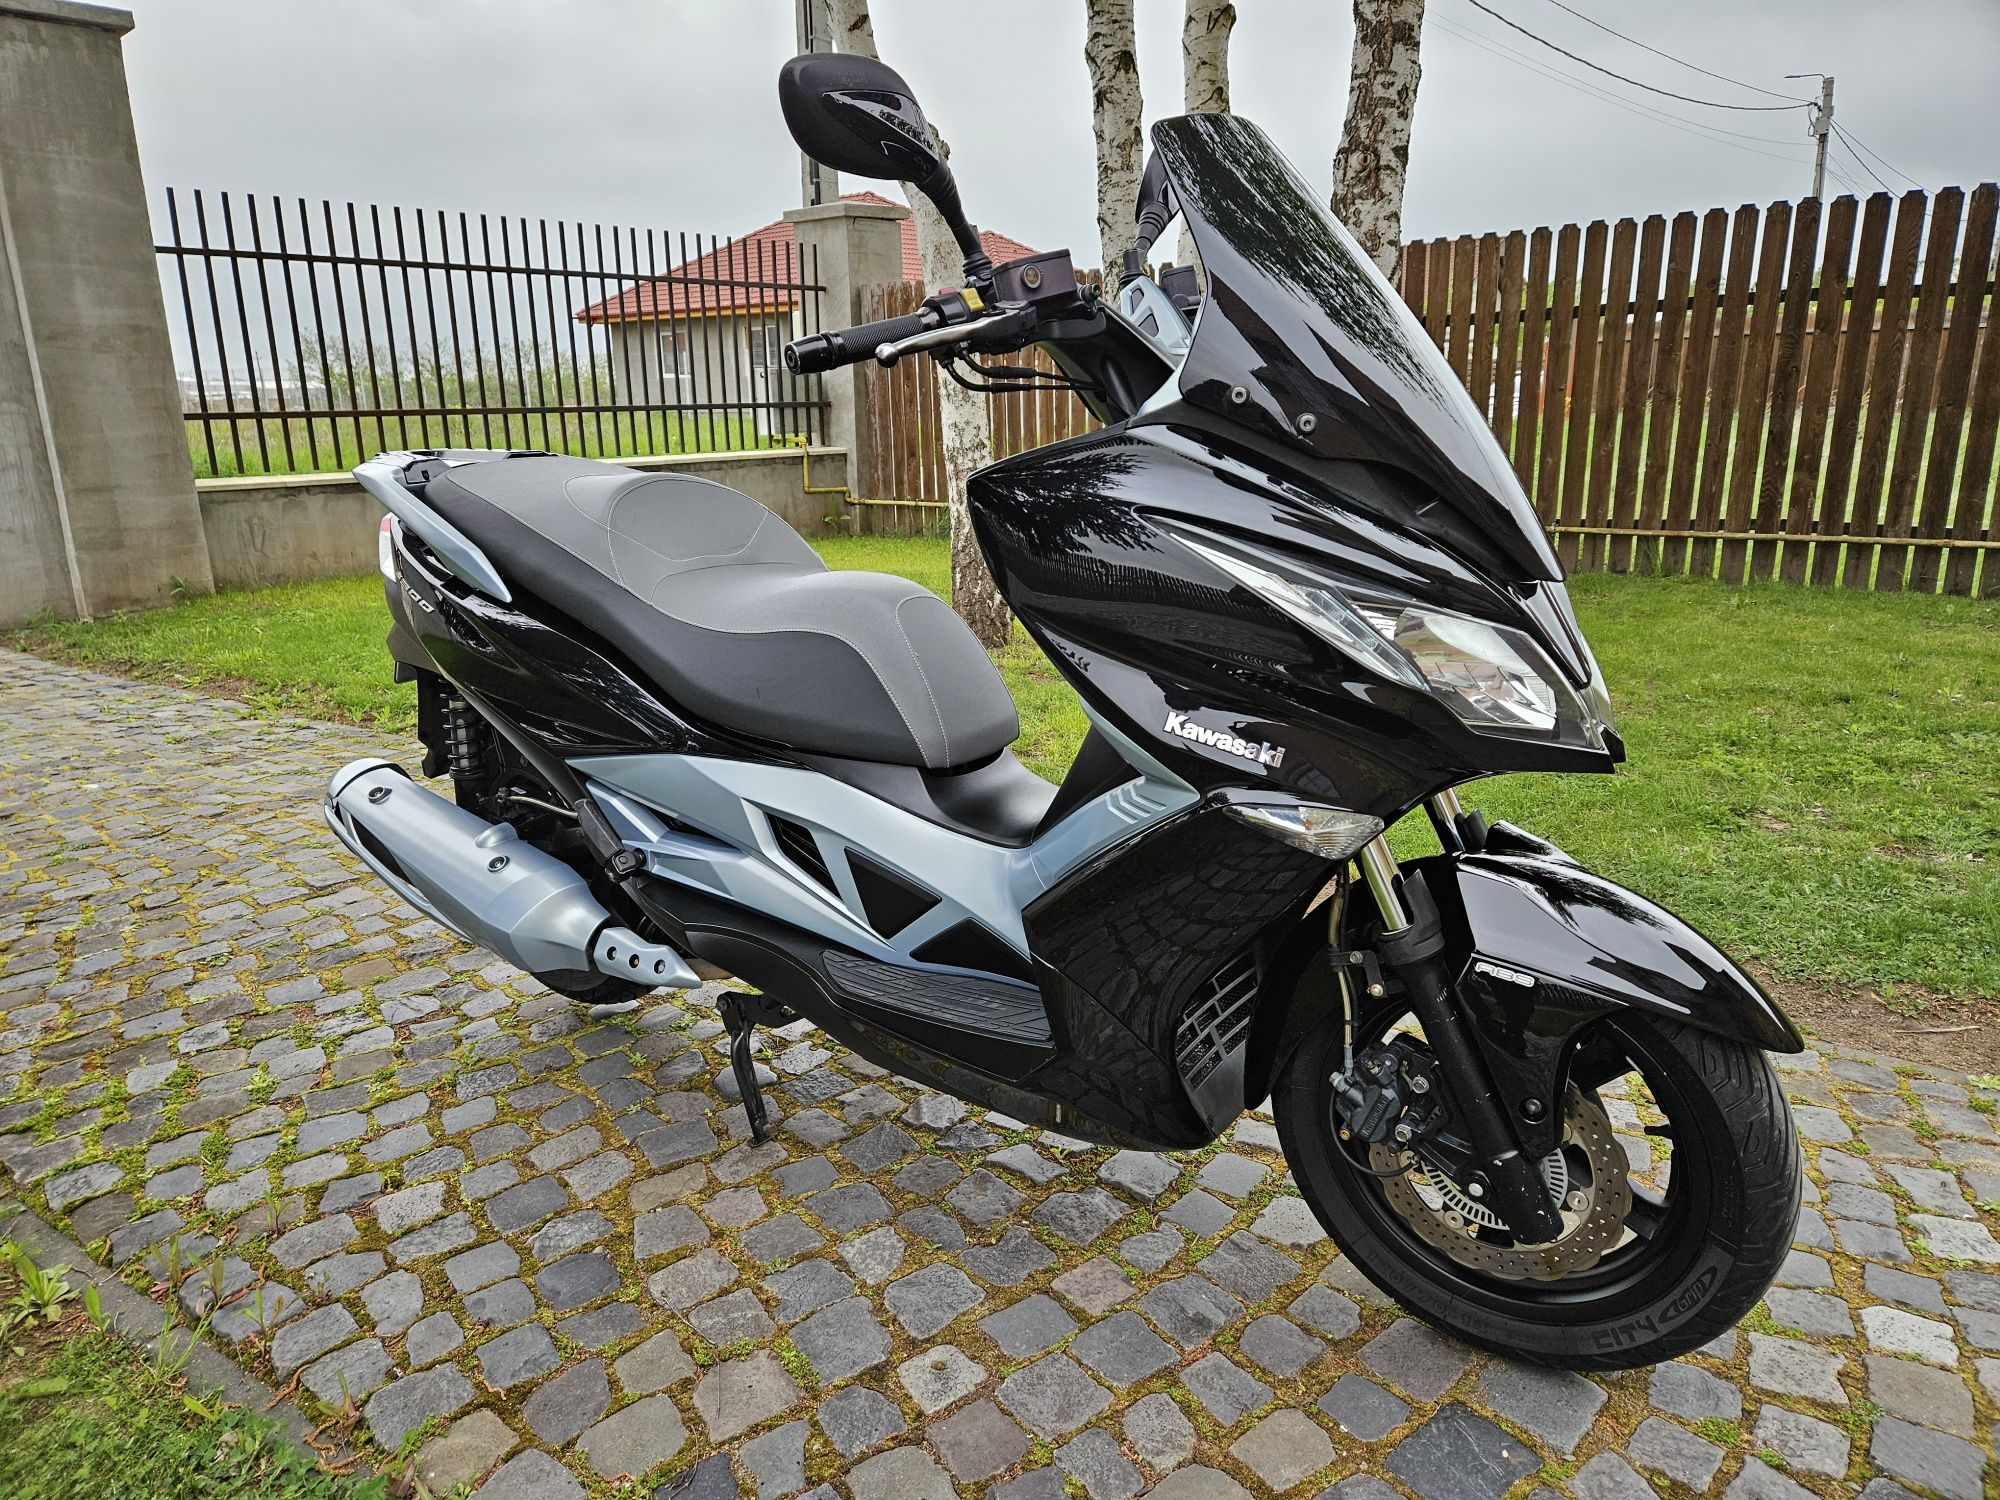 Kawasaki J300  scuter, scooter  7435 km